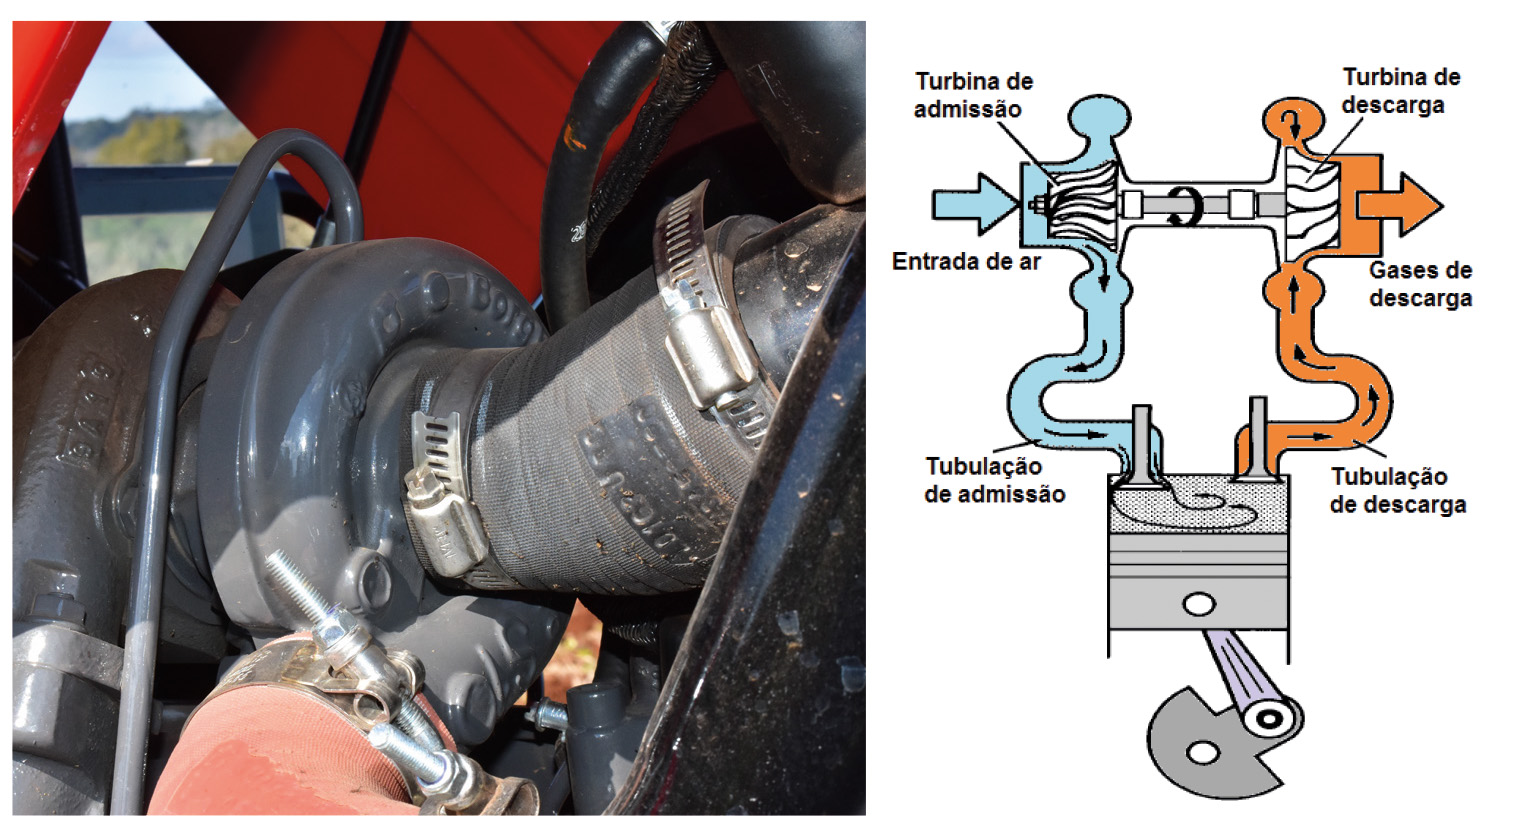 Turbocompressor (esq.) e esquema de funcionamento de um turbocompressor (dir.)